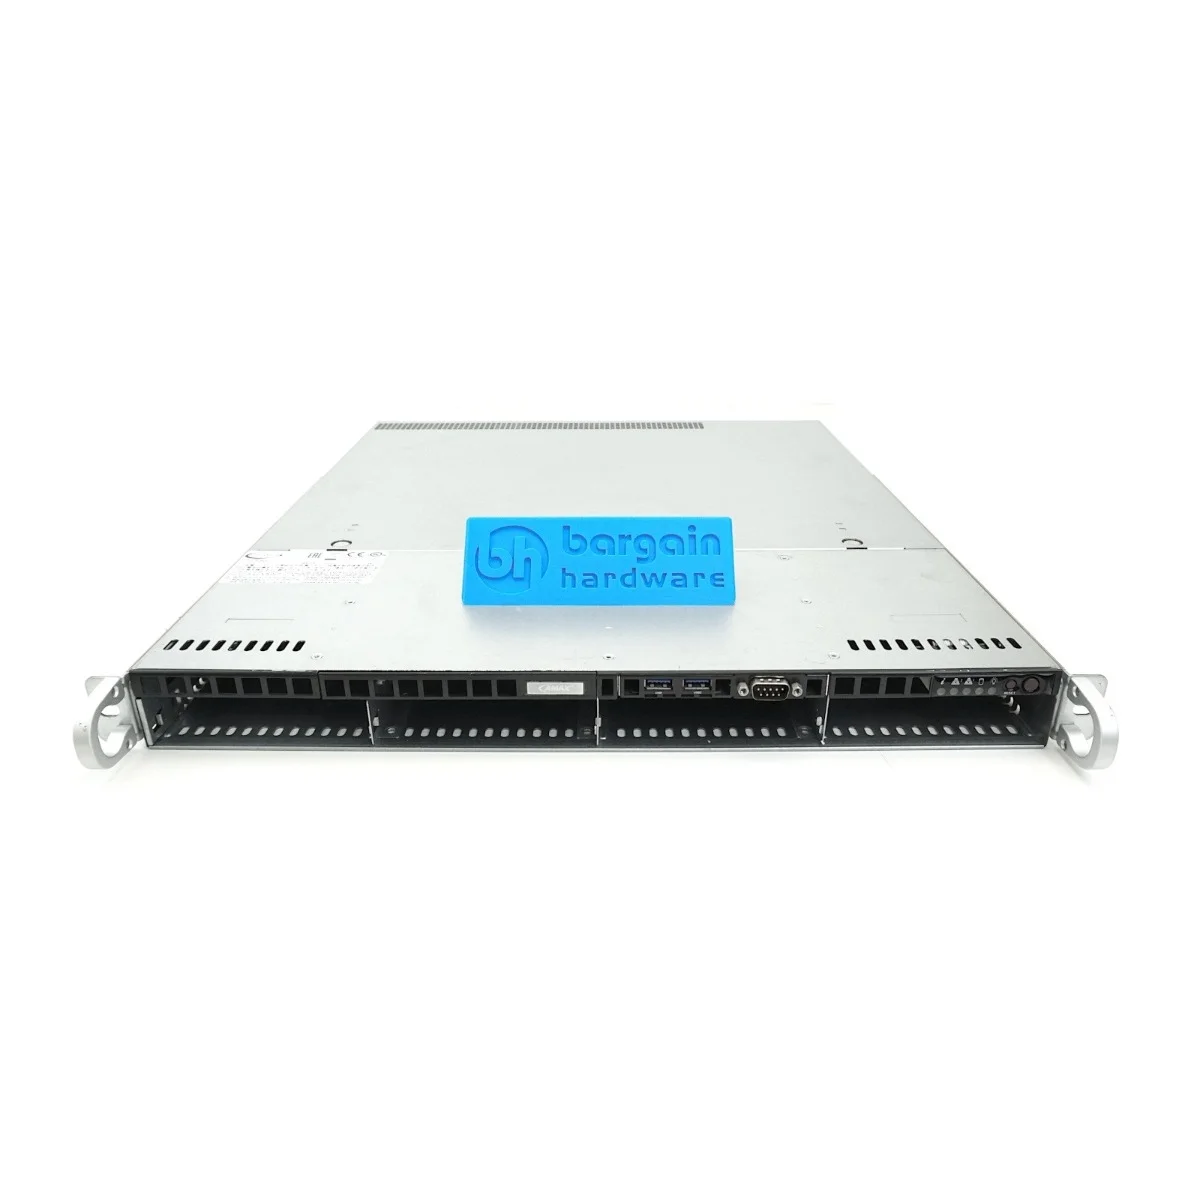 SuperMicro SuperServer 6017R-TDF 1U Rack Server